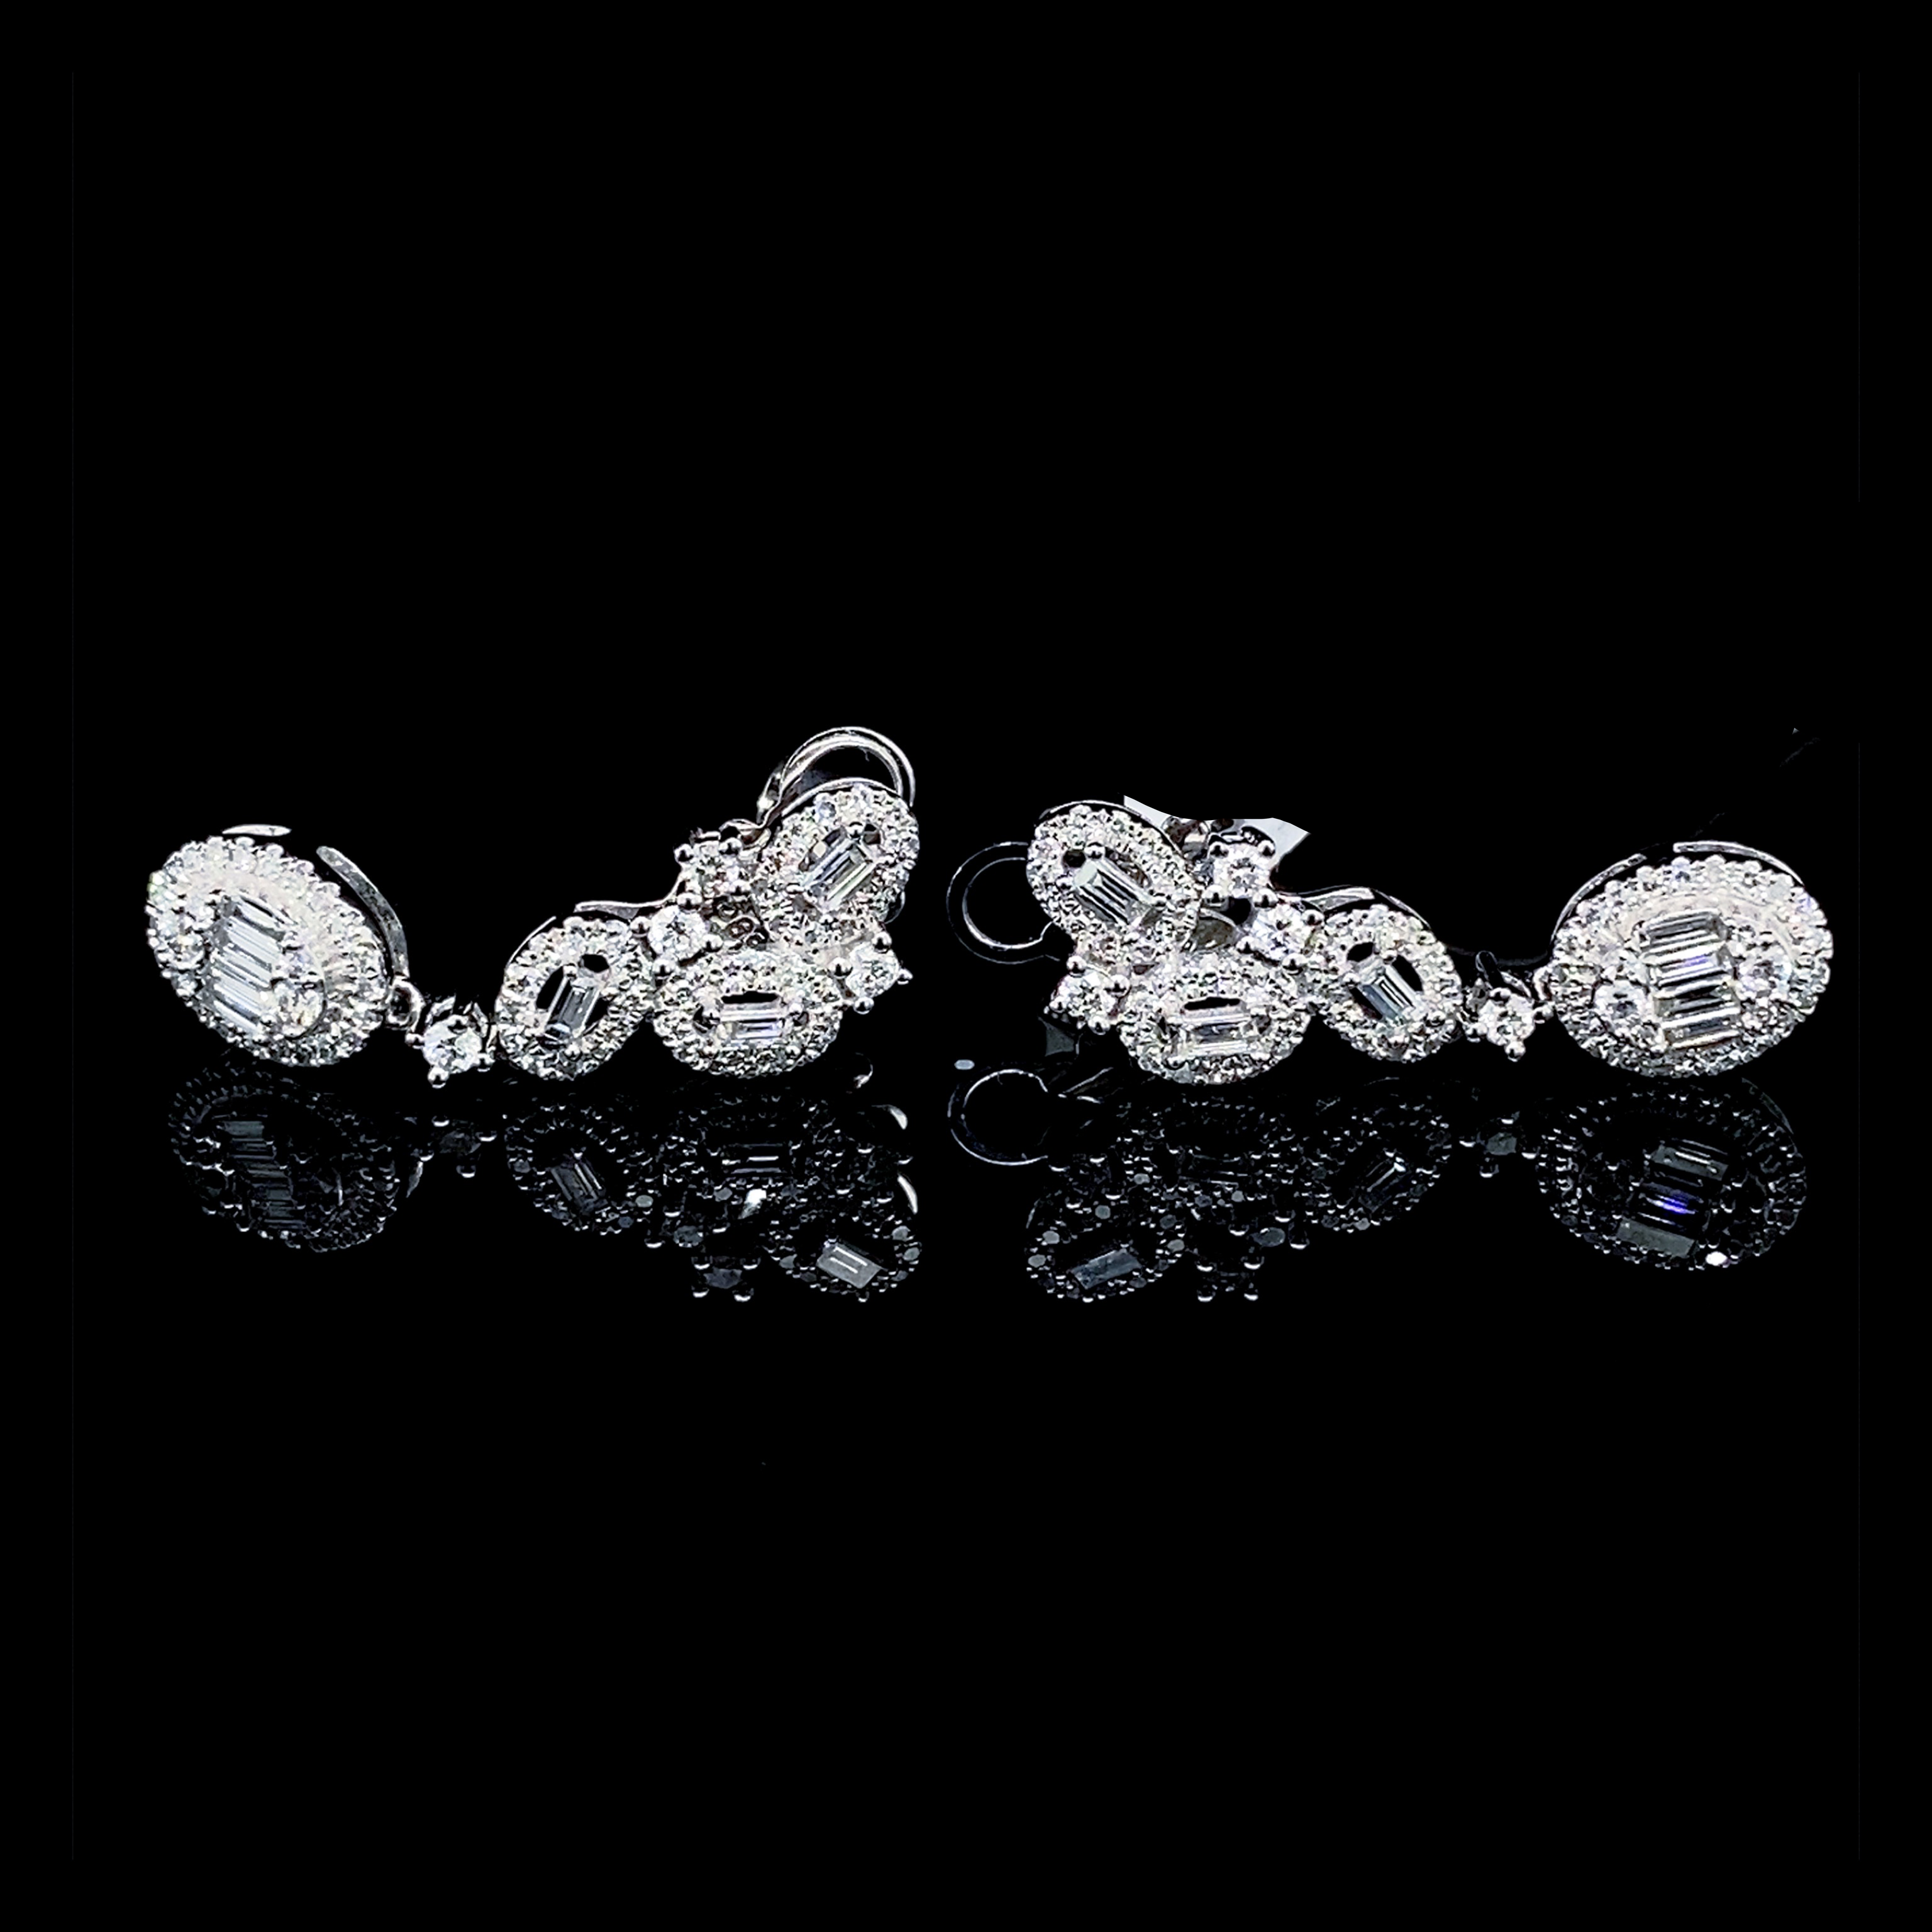 10.10 | Oval Art Deco Dangling Diamond Earrings 14Kt